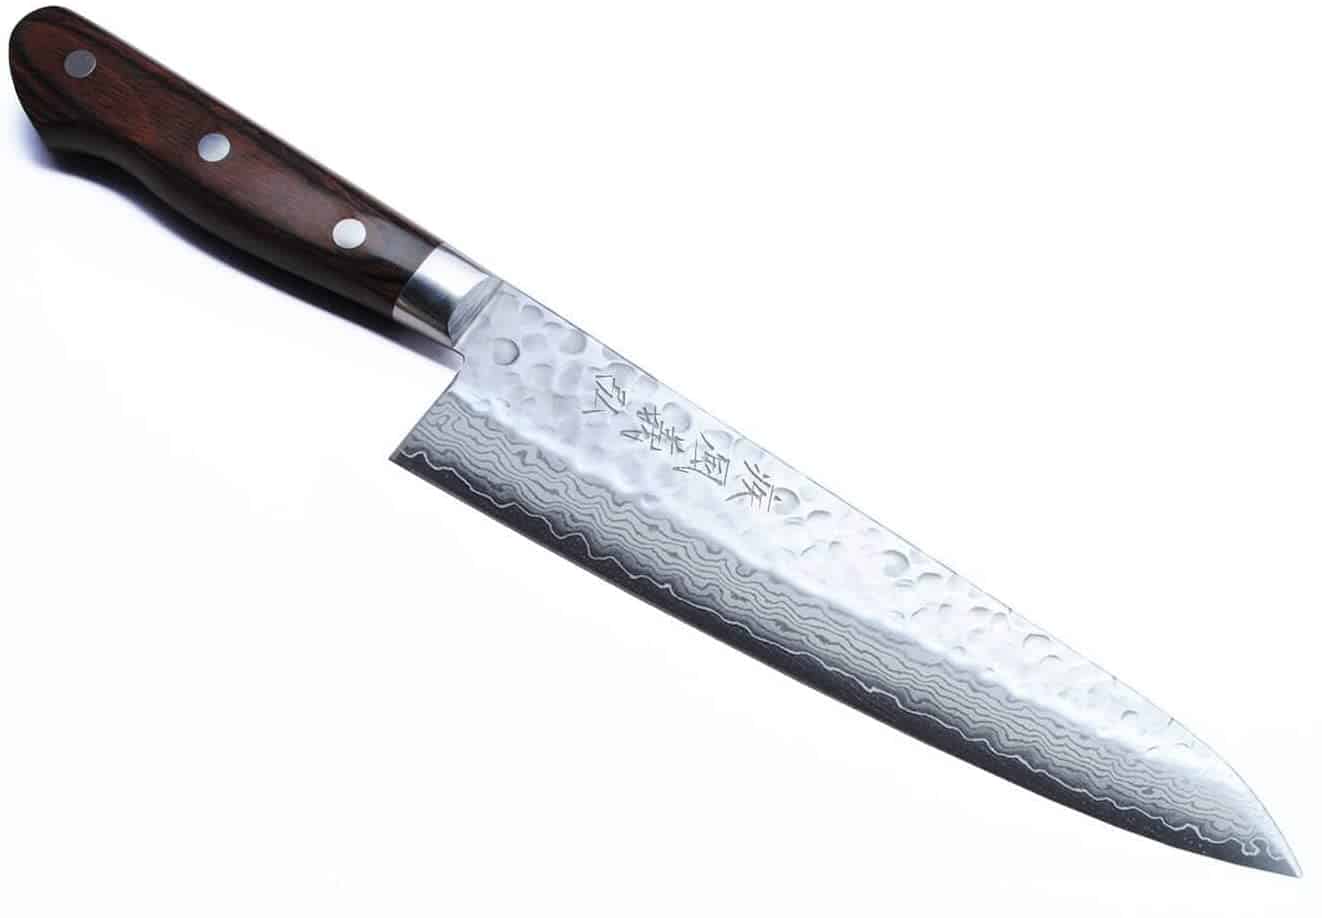 Best gyuto knife overall- Yoshihiro VG10 16 Layer Hammered Damascus Gyuto